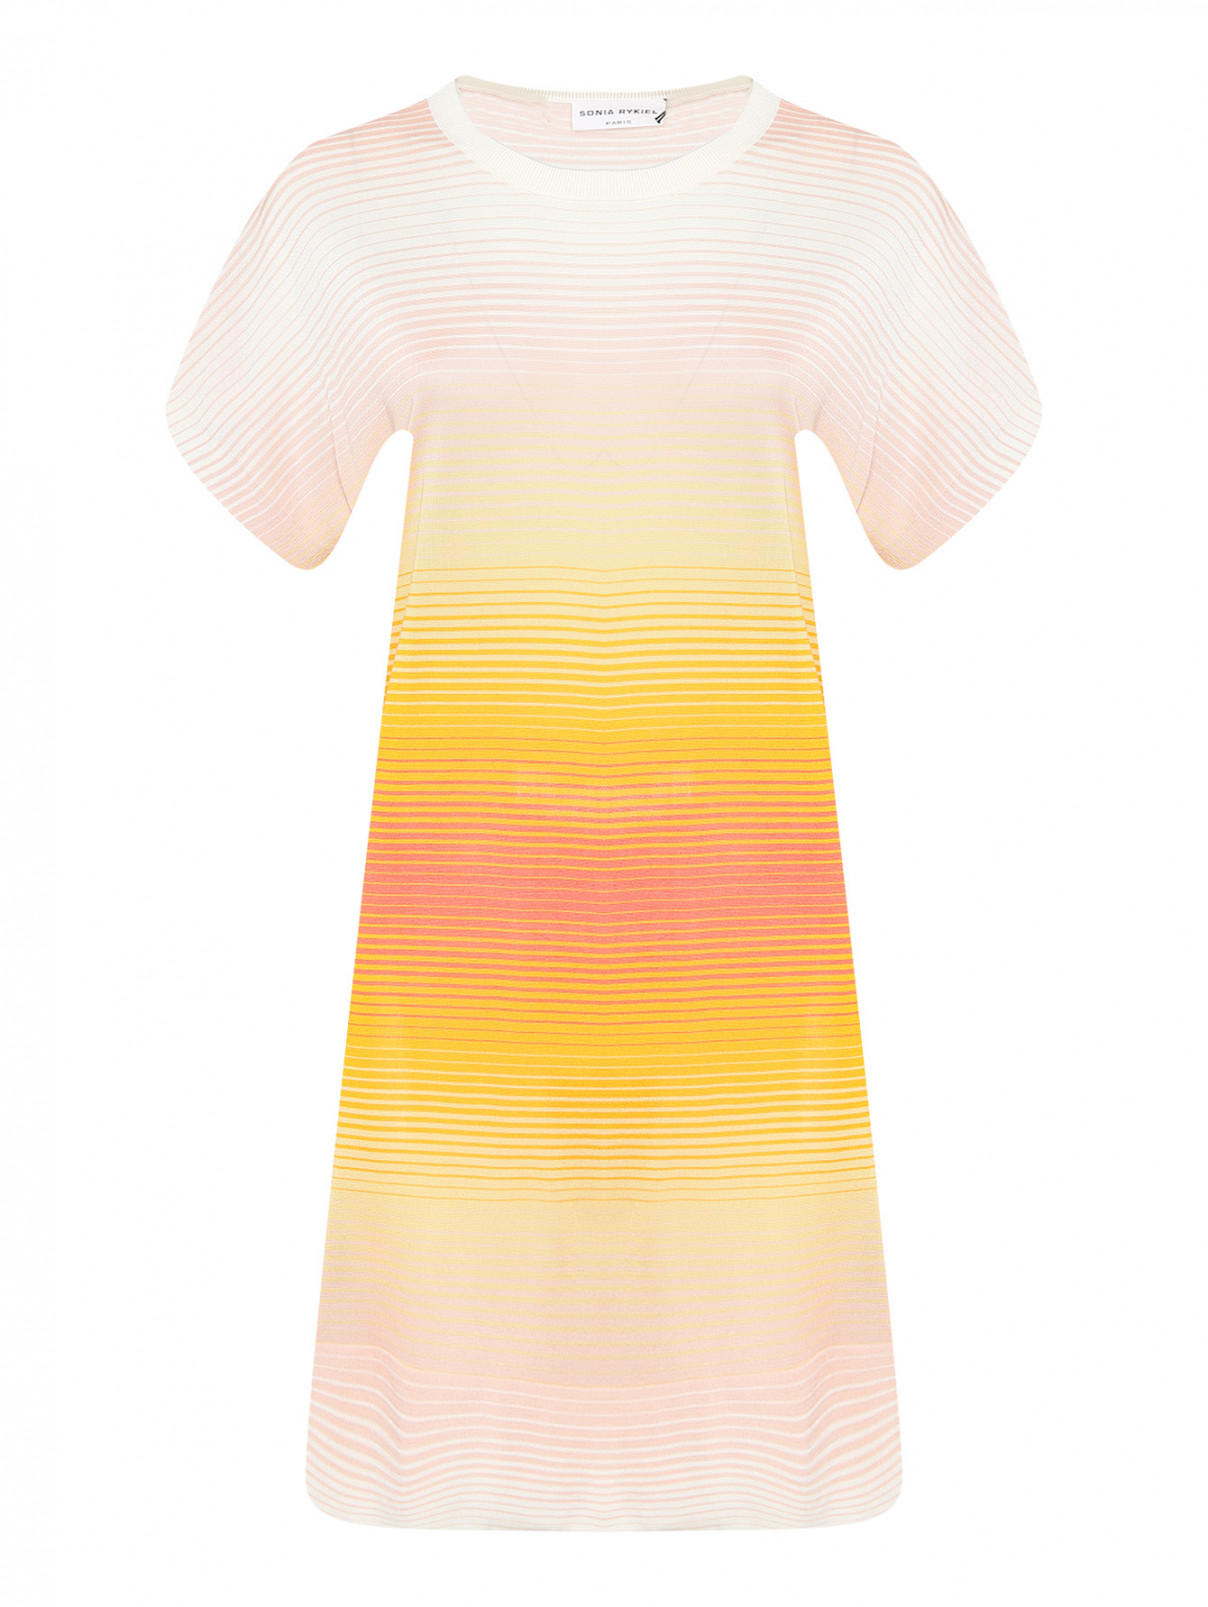 Трикотажное платье с узором полоска Sonia Rykiel  –  Общий вид  – Цвет:  Мультиколор